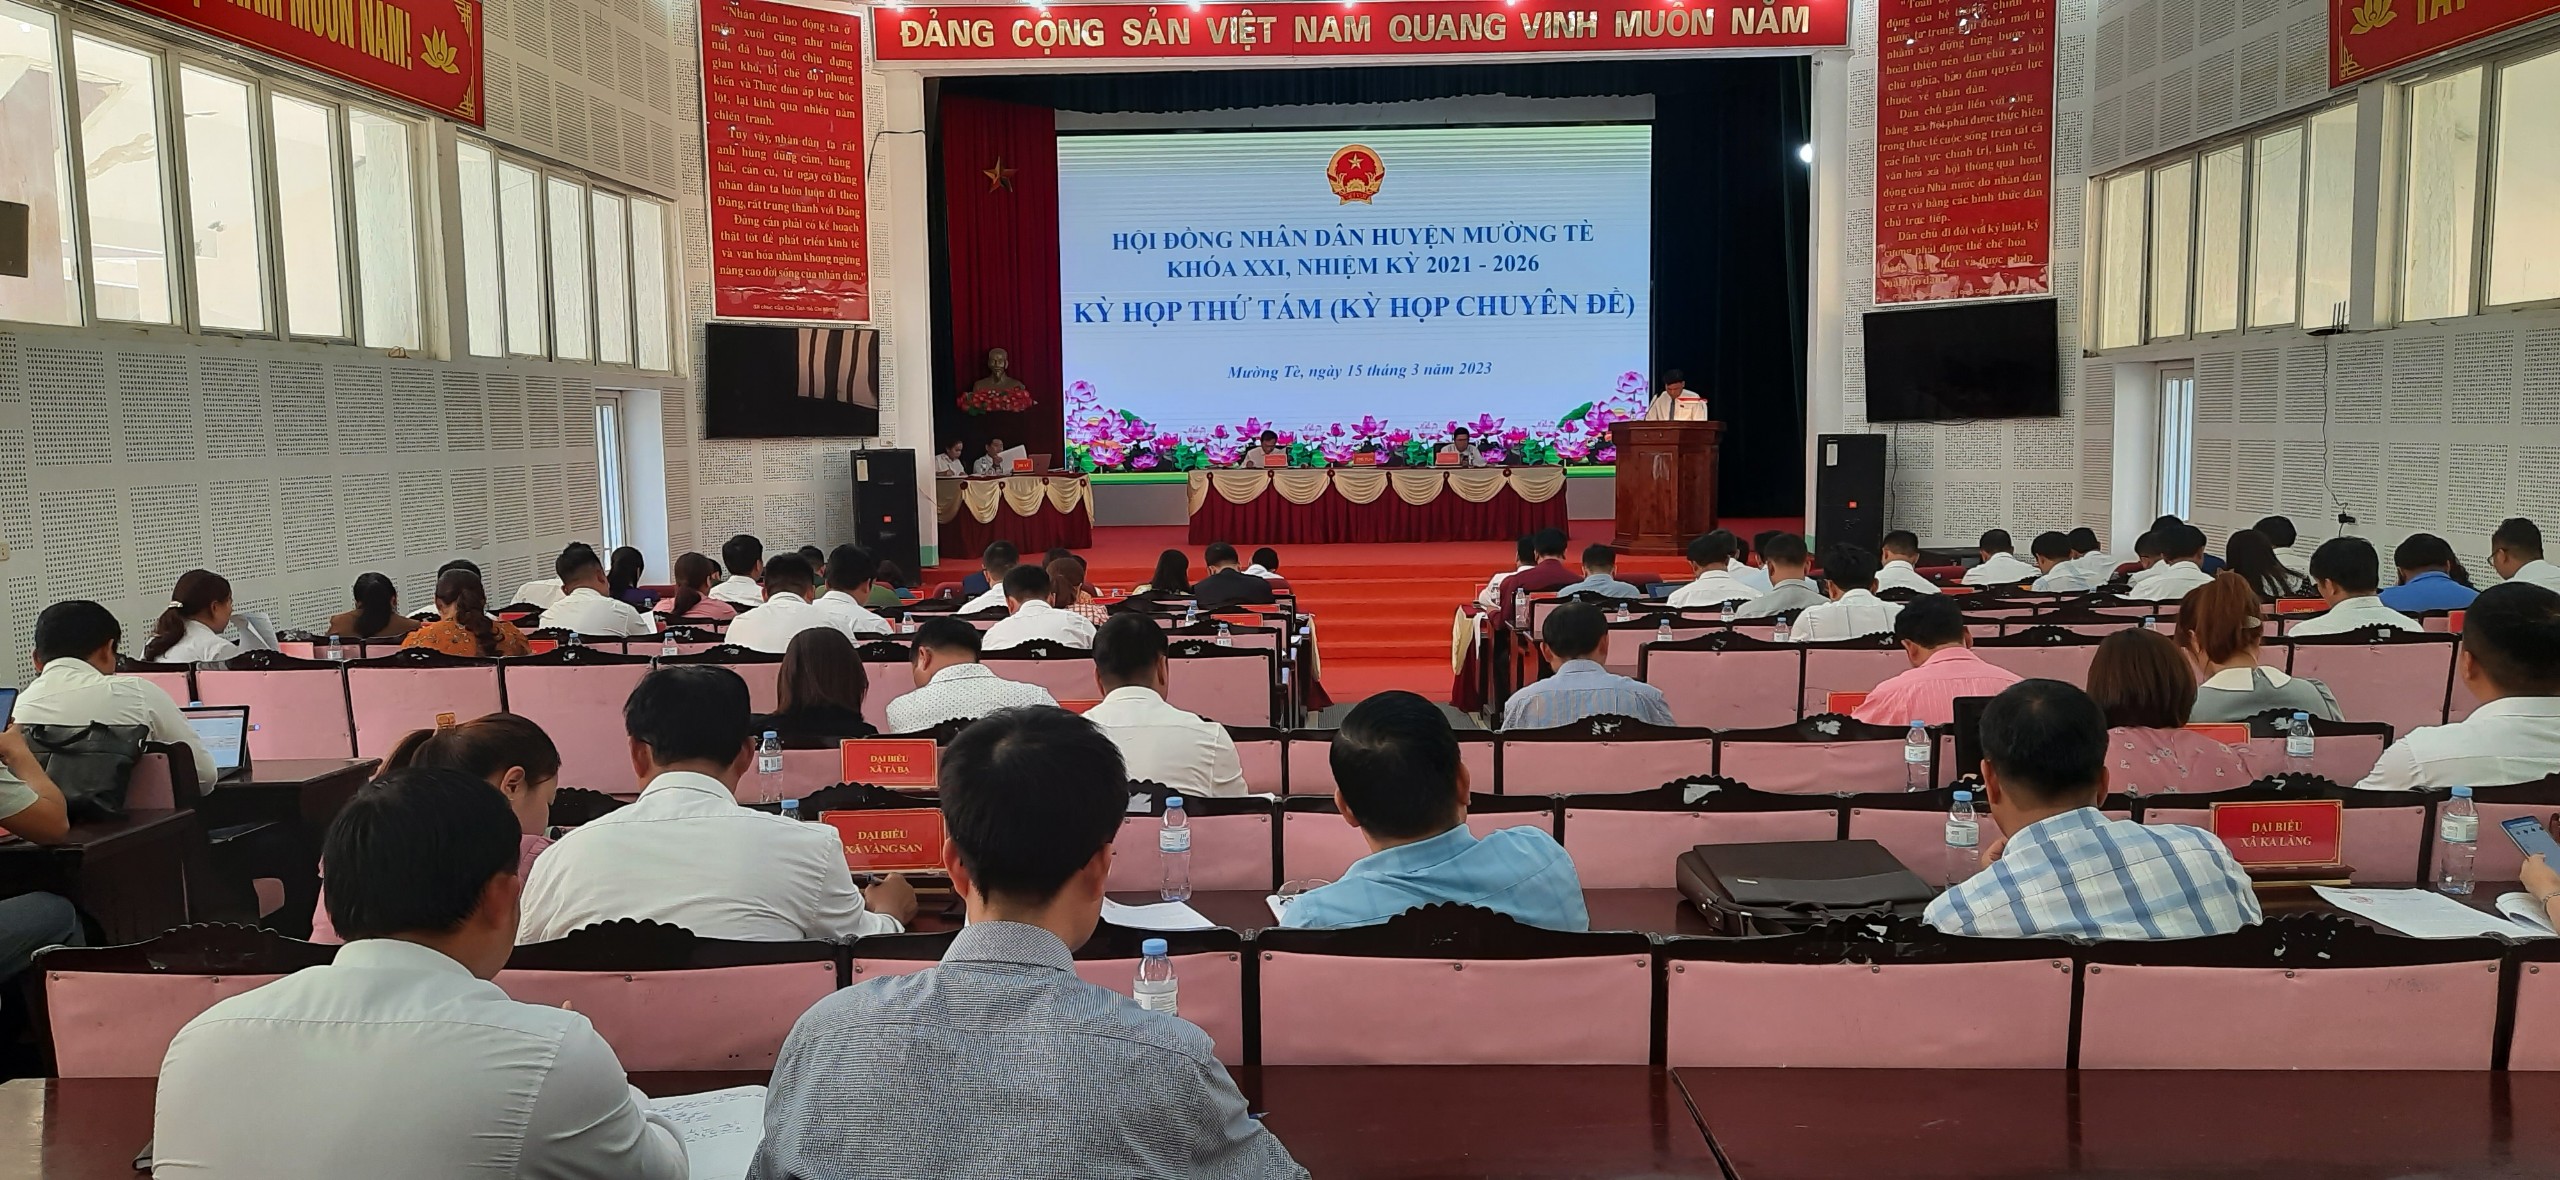 Kỳ họp thứ 8 (kỳ họp chuyên đề) Hội đồng Nhân dân huyện Mường Tè khóa XXI, nhiệm kỳ 2021-2026